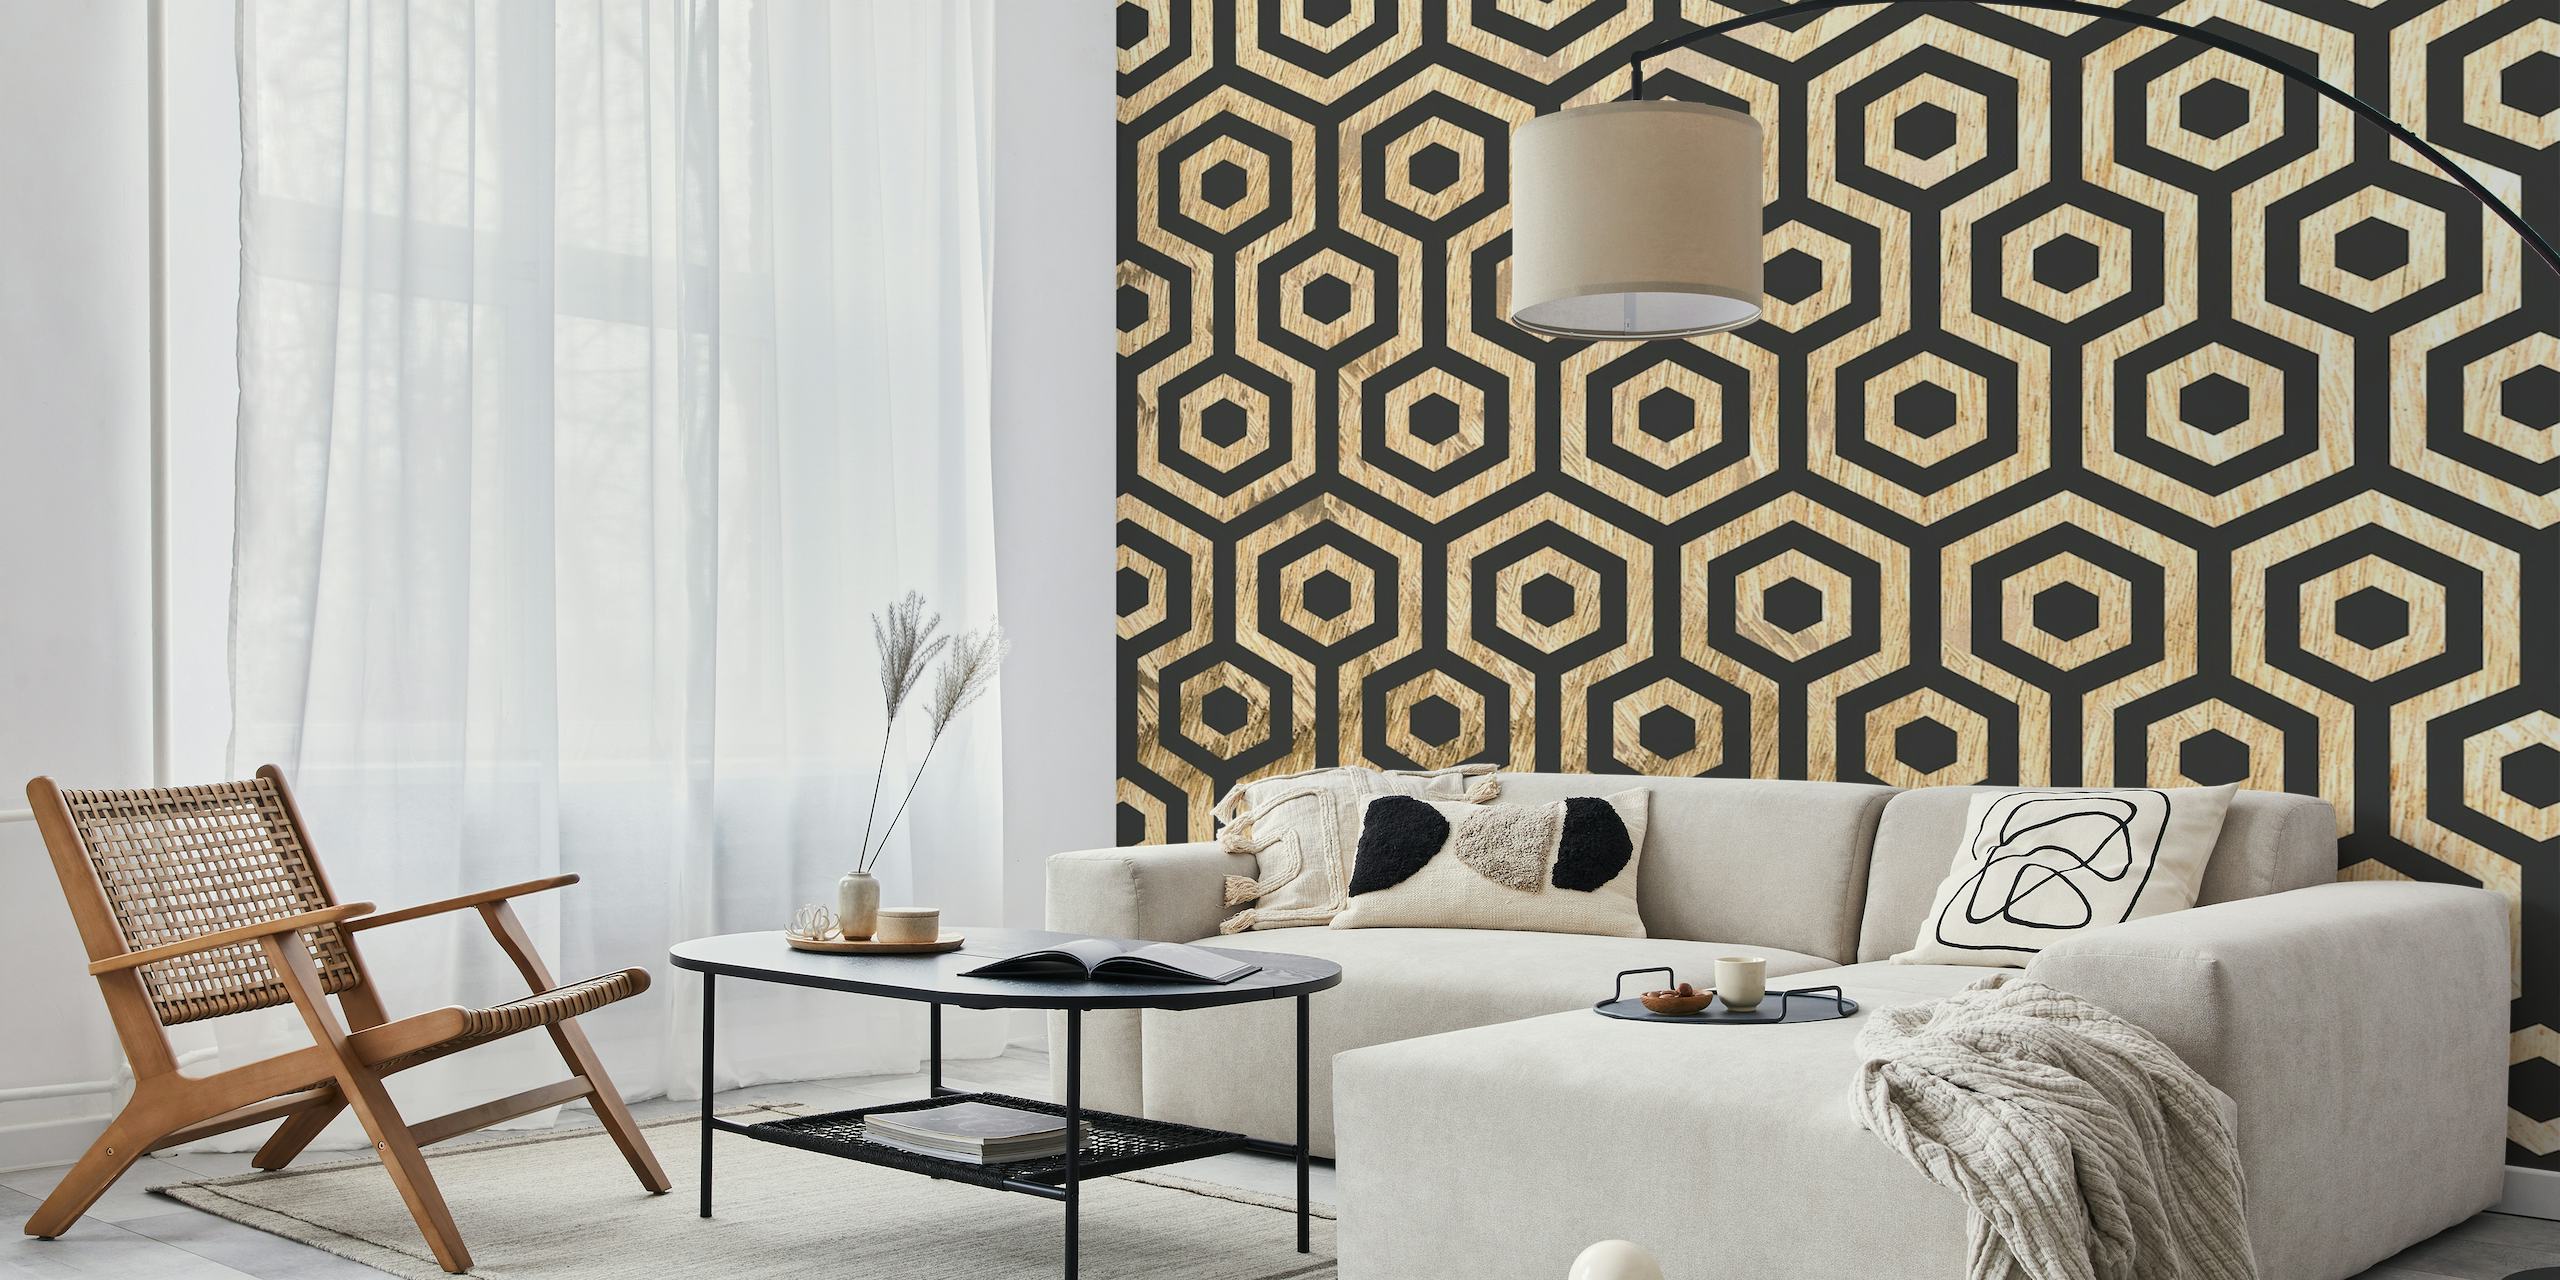 Wood Texture Hexagon Damast fotobehang met geometrische patronen in natuurlijke houten tinten